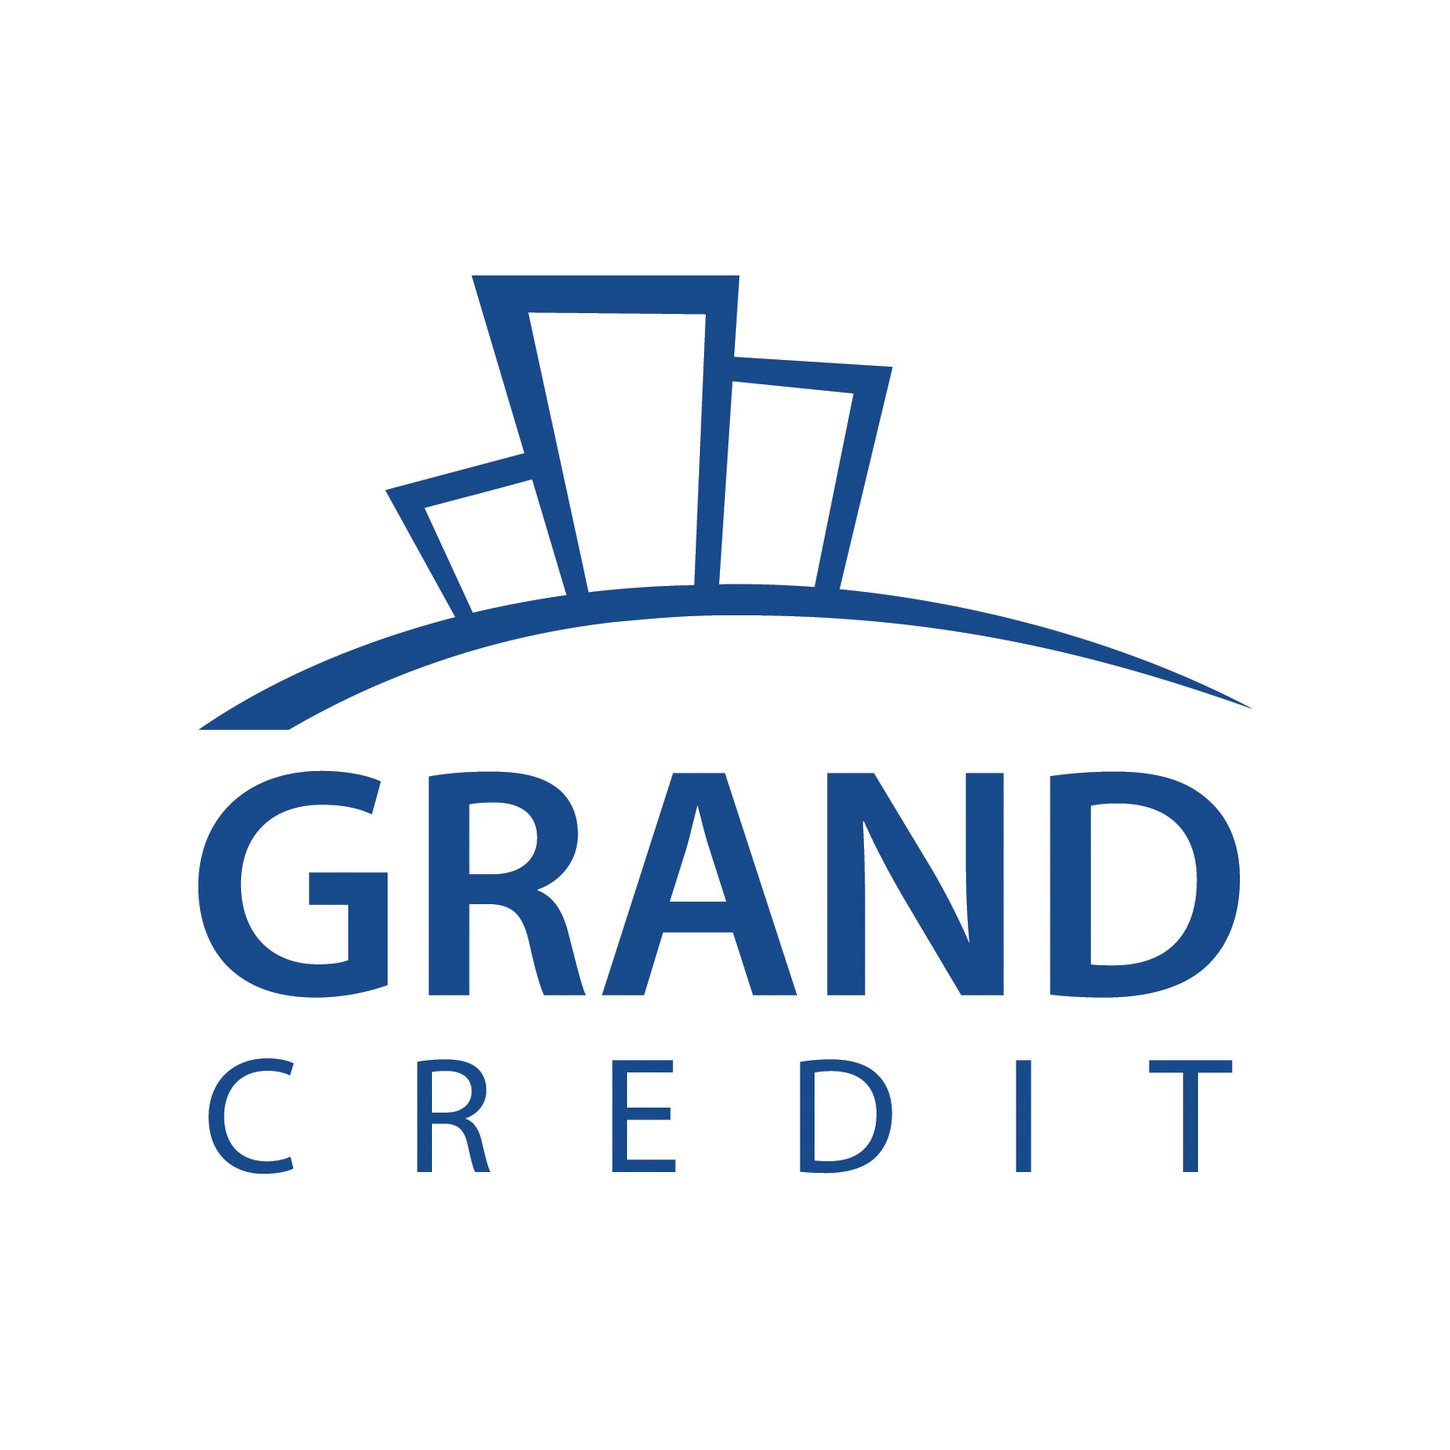 Grand Credit поддержал Кудигскую центральную среднюю школу